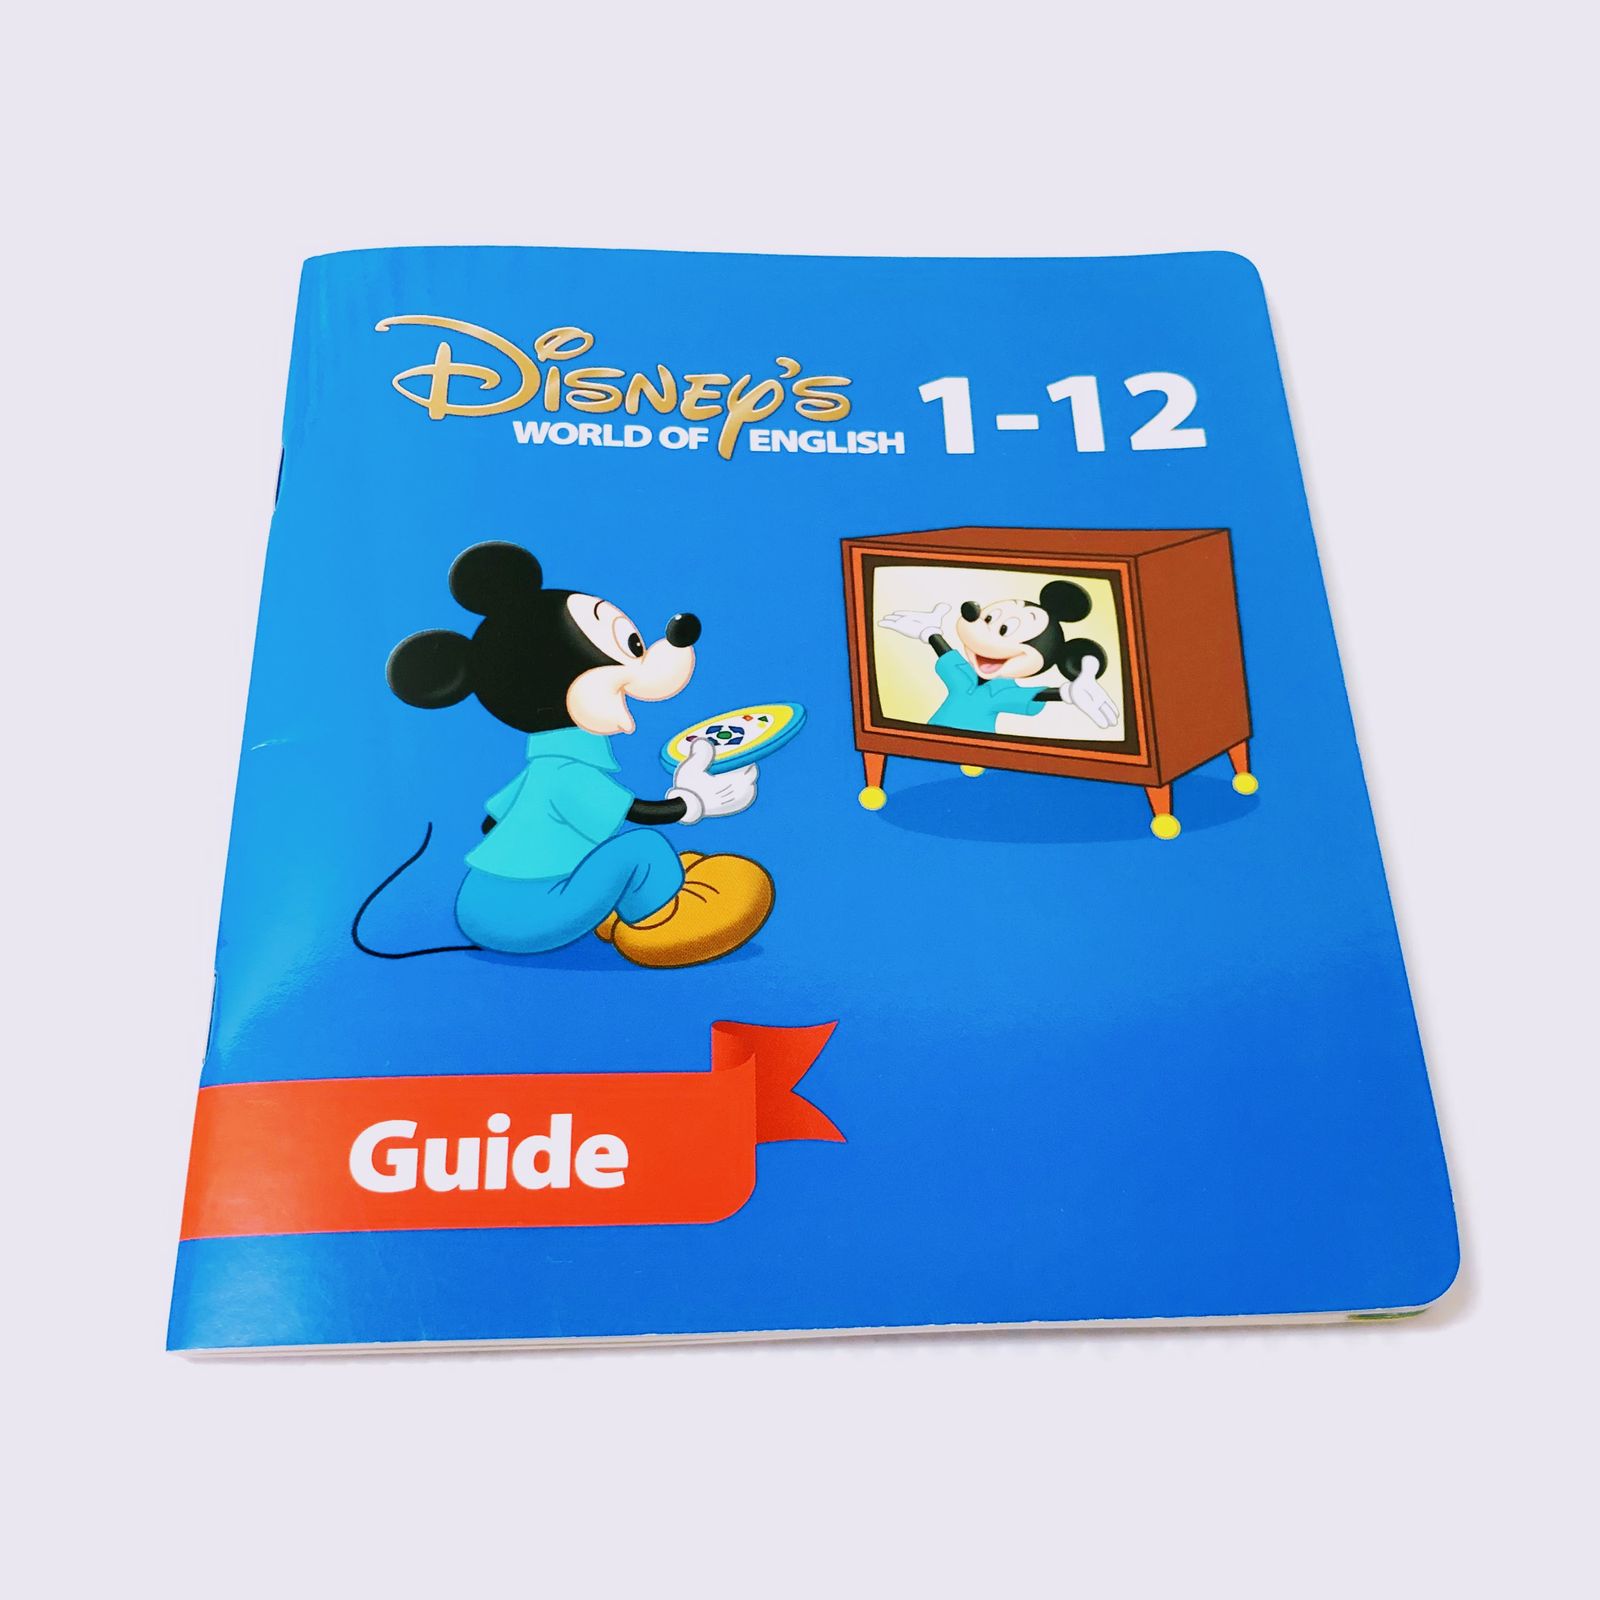 ディズニー英語システム ストレートプレイ DVD 旧子役 字幕有 2012年